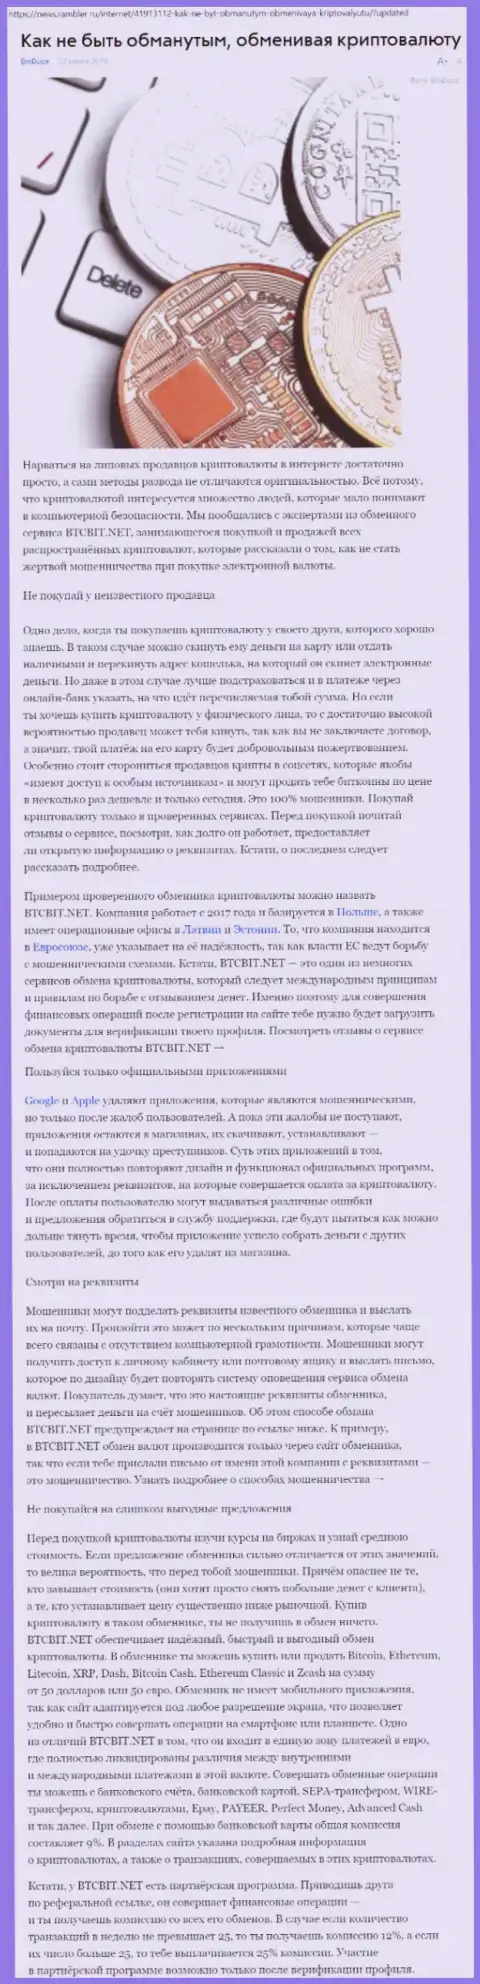 Статья об онлайн-обменнике BTCBit на News Rambler Ru